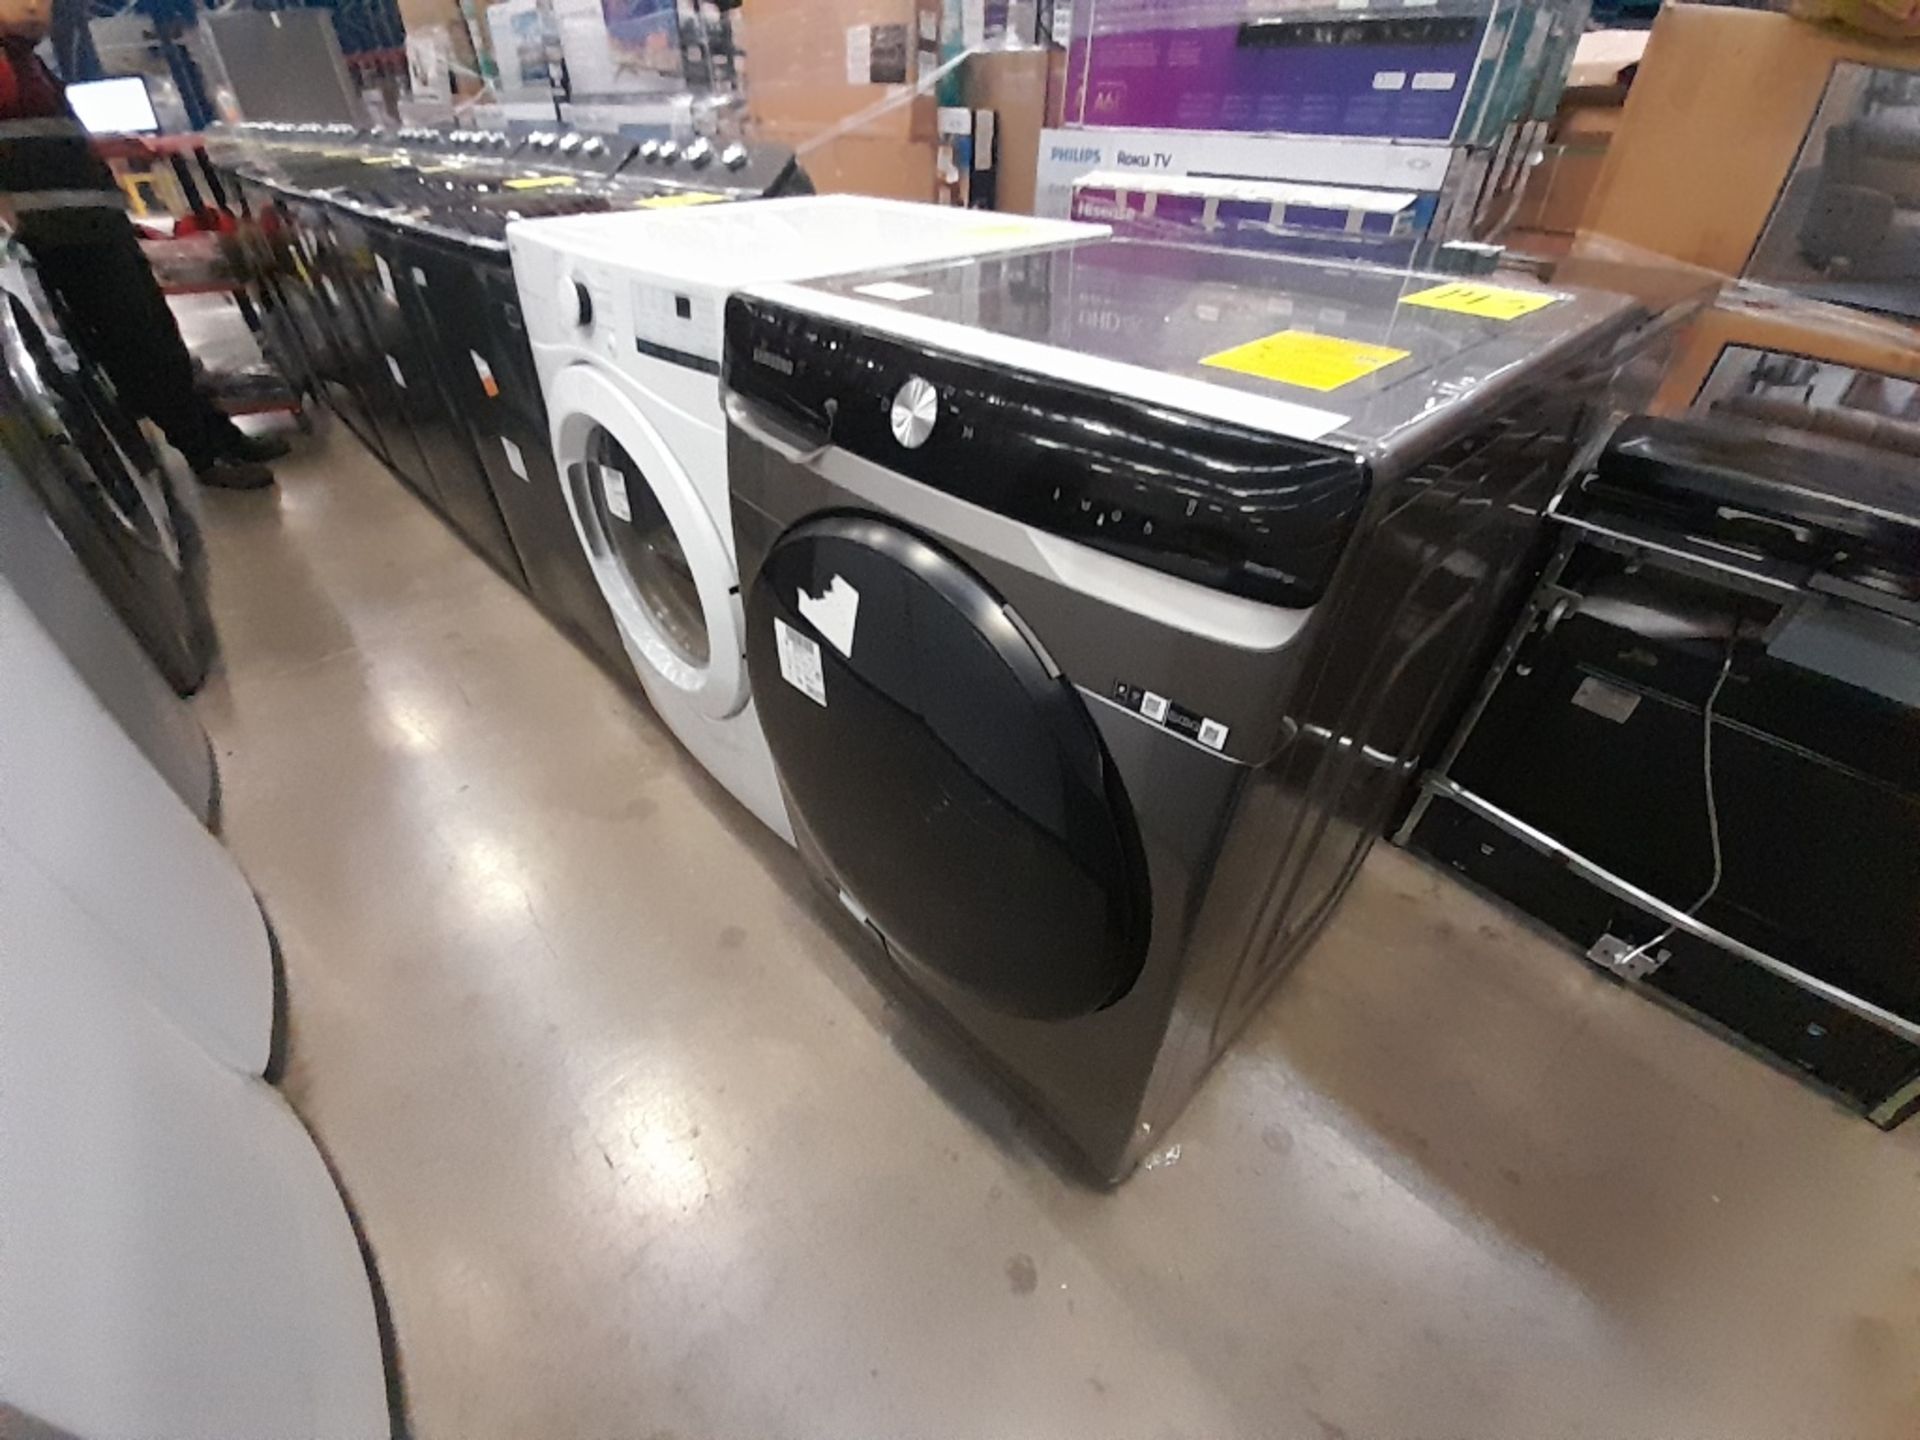 Lote de 1 lavadora y 1 Secadora contiene: 1 lavadora de 20 KG, Marca SAMSUNG, Modelo WD20T6300GP, S - Image 3 of 7